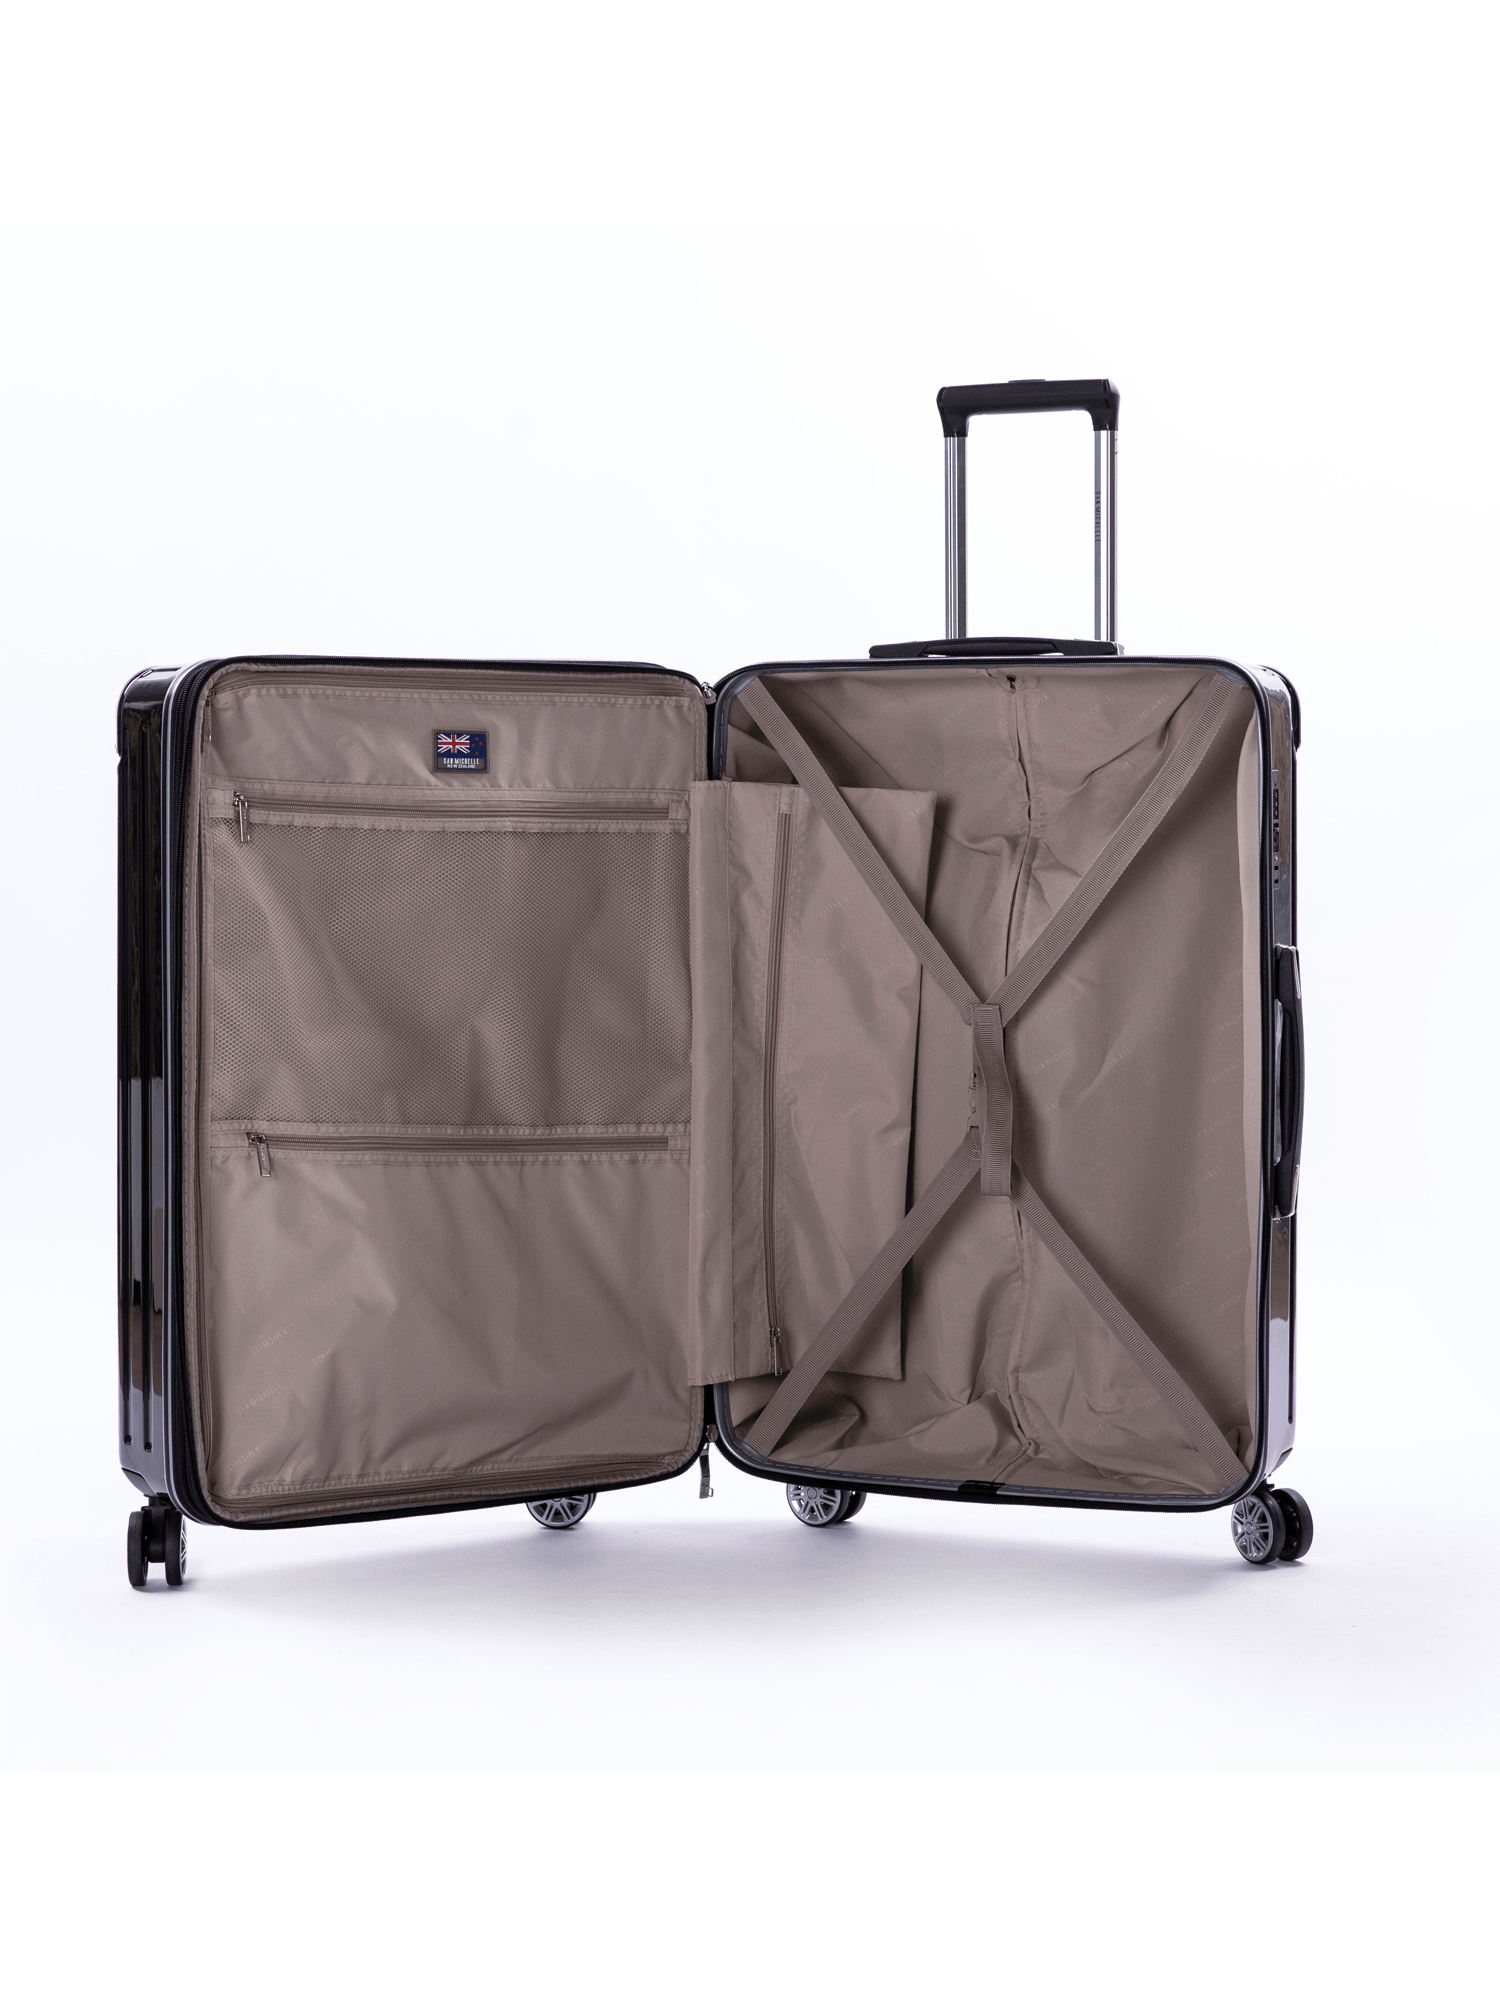 San Michelle Secure Adventurer 68cm Suitcase - San Michelle Bags suitcase nz